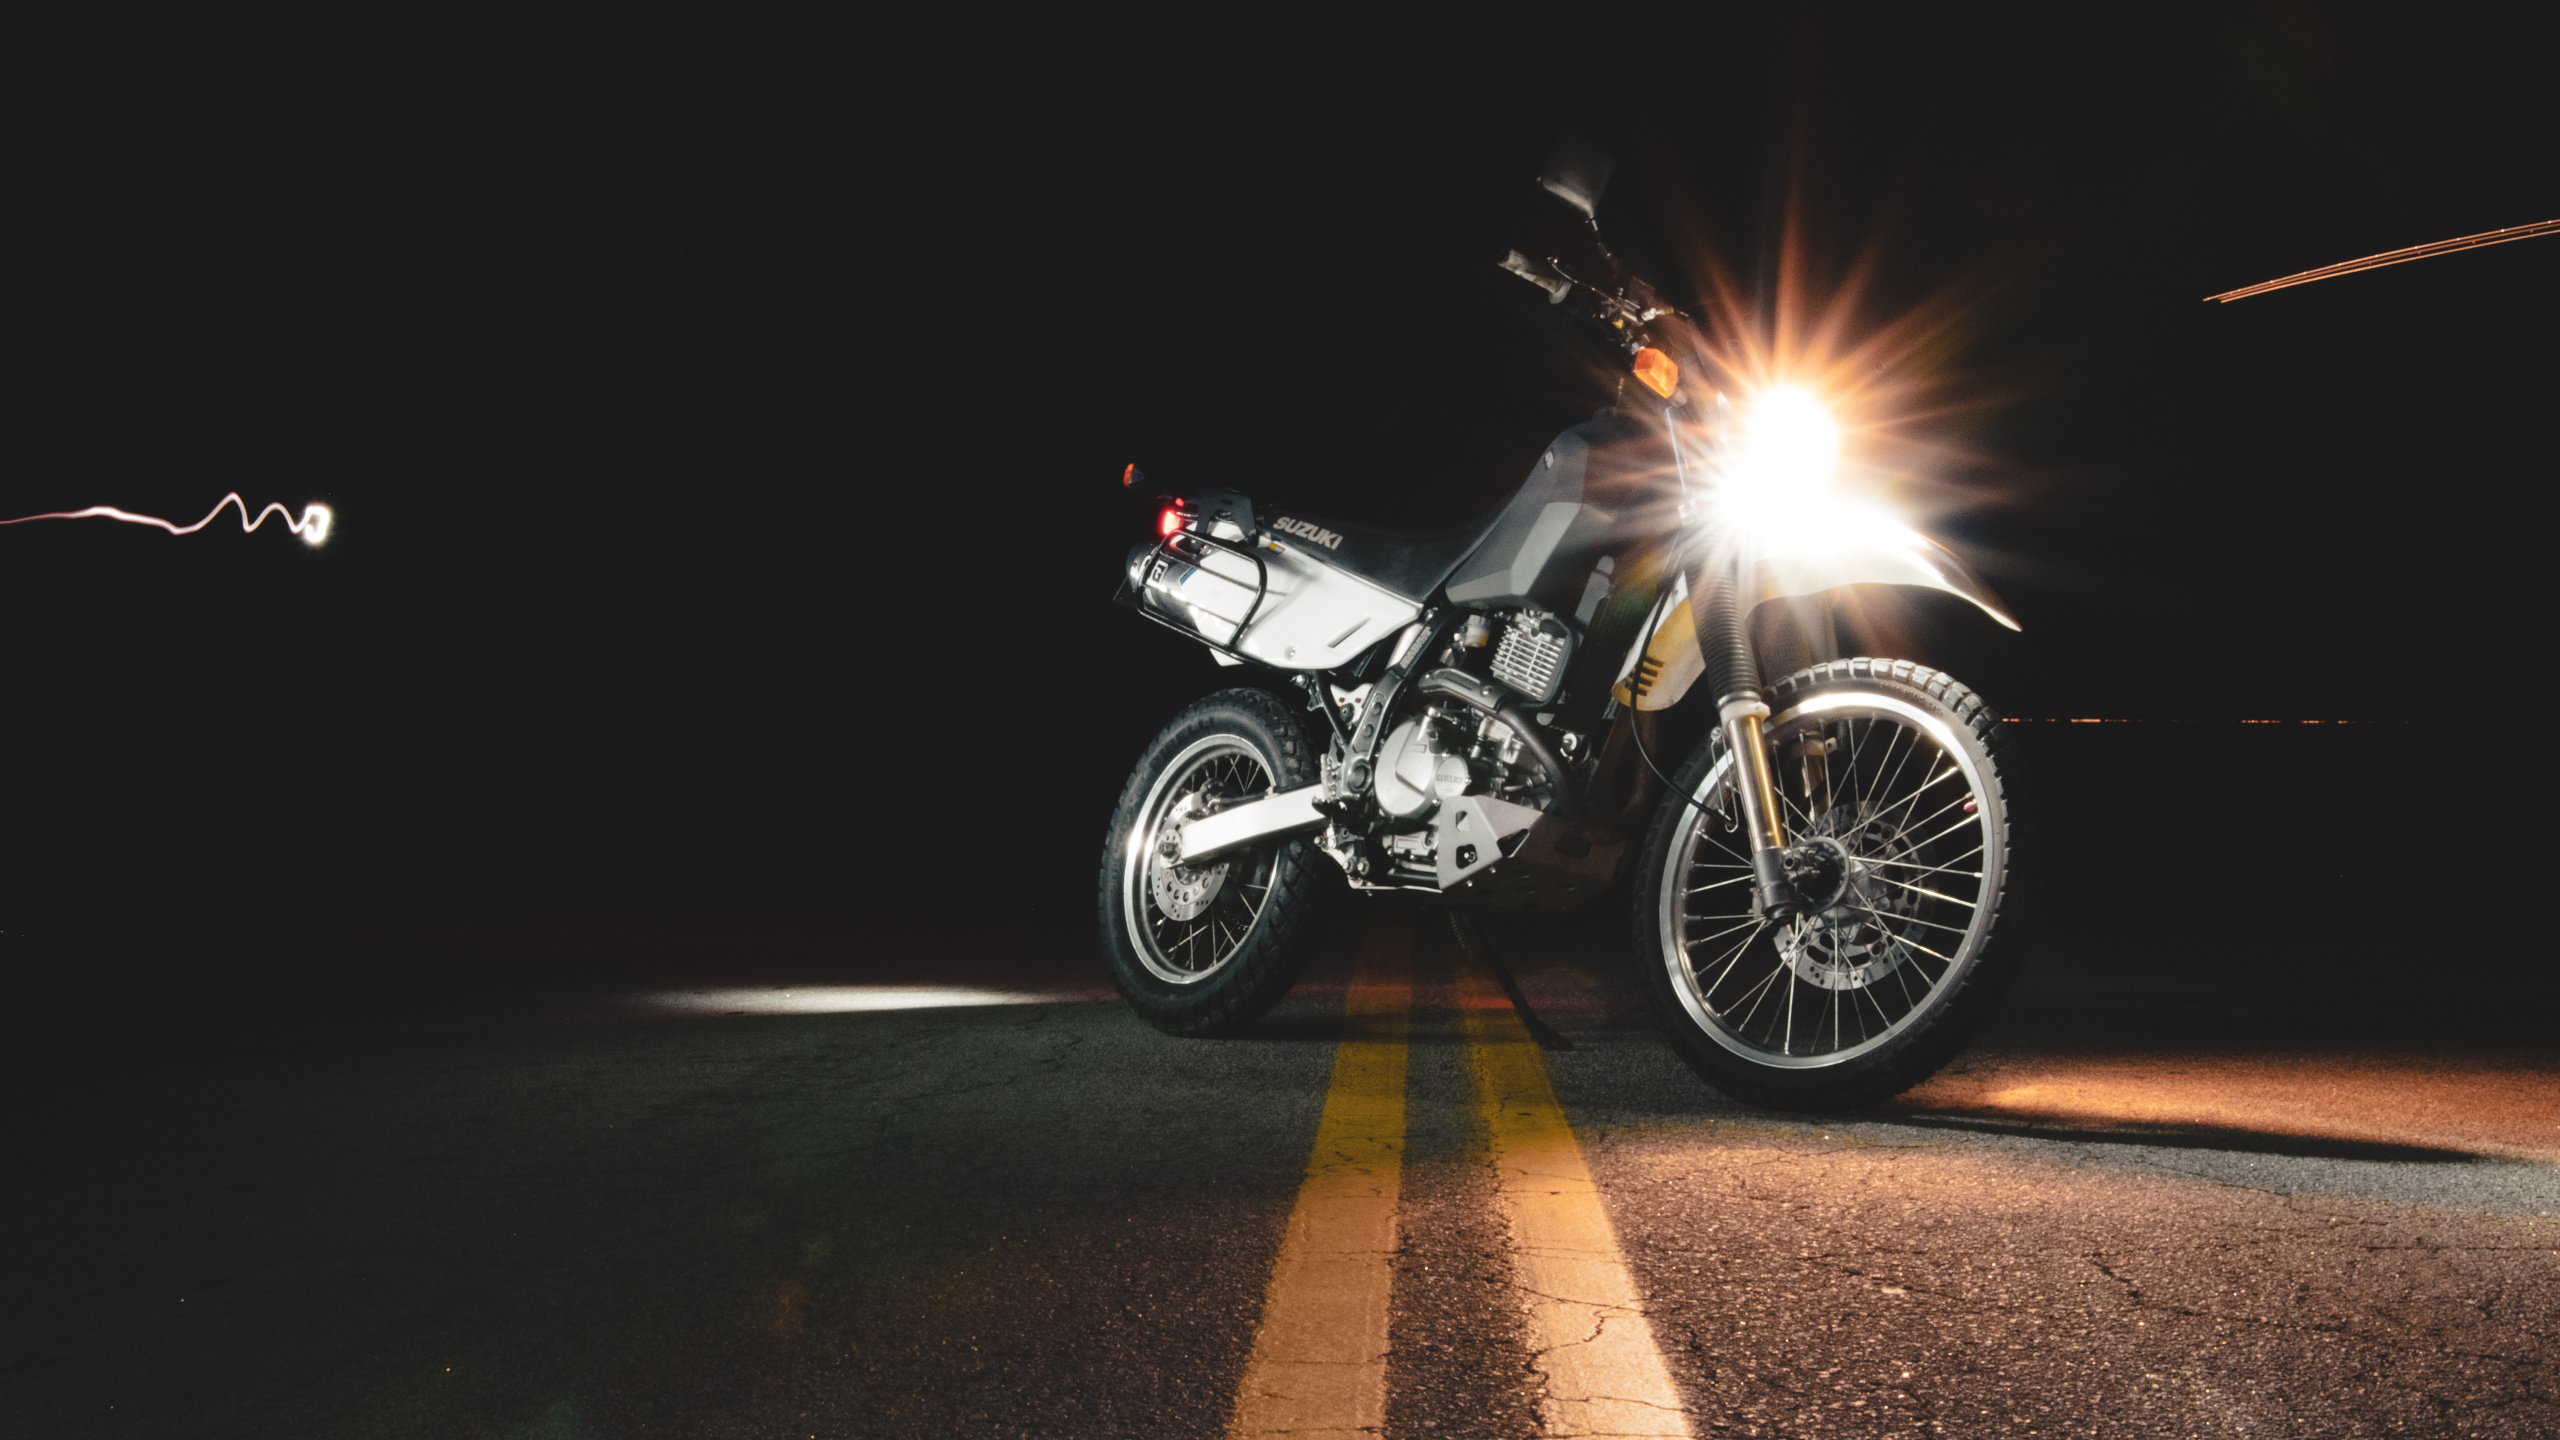 摩托车配件, 车灯, 头灯, 光, 自由式的摩托车越野赛 壁纸 2560x1440 允许